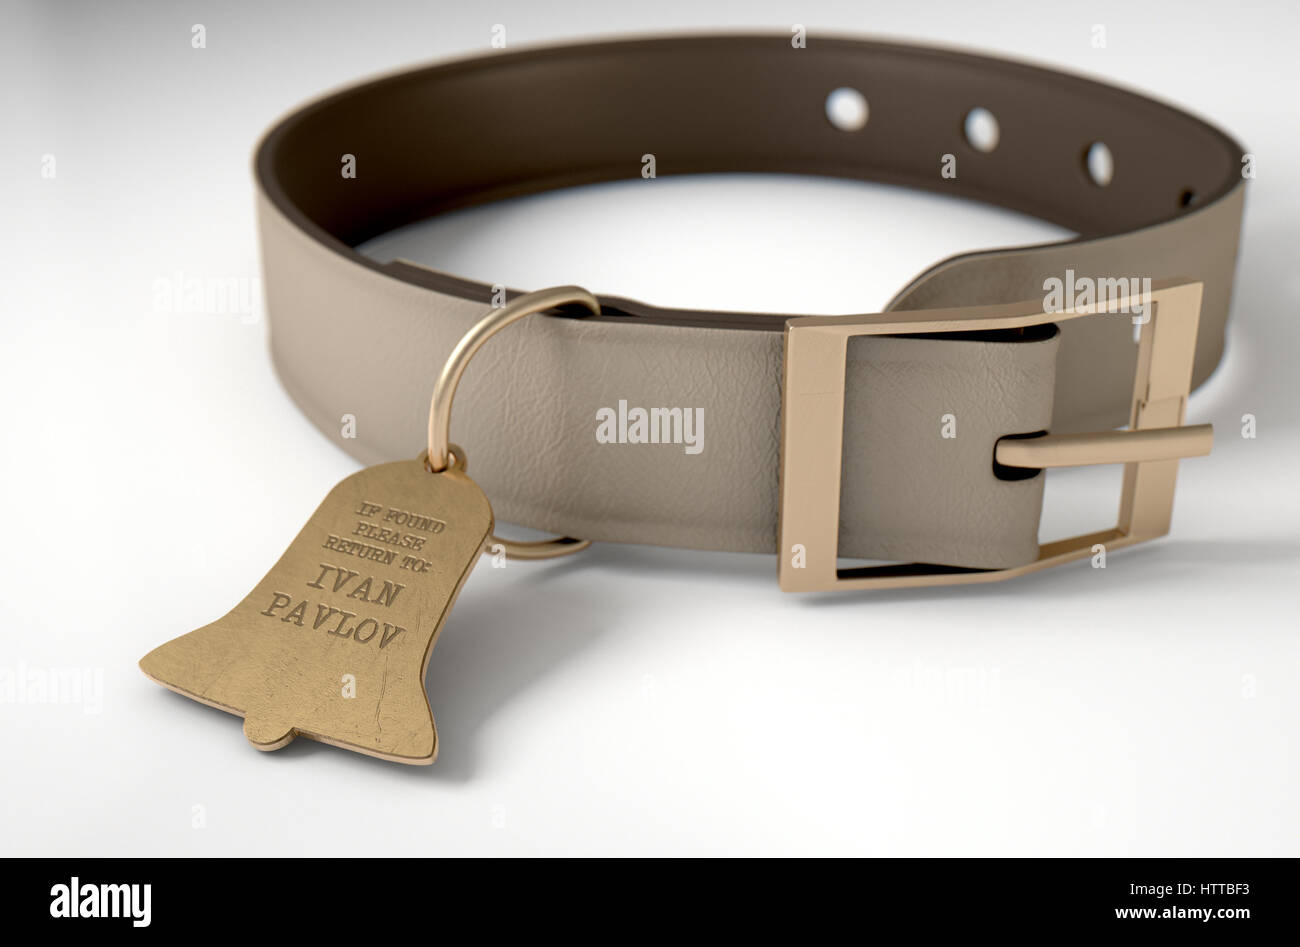 Un concept de conditionnement pavlovien illustrant une théorie de collier pour chien en cuir et une étiquette d'identification en forme de cloche de propriété à Ivan Pavlov - 3D r Banque D'Images